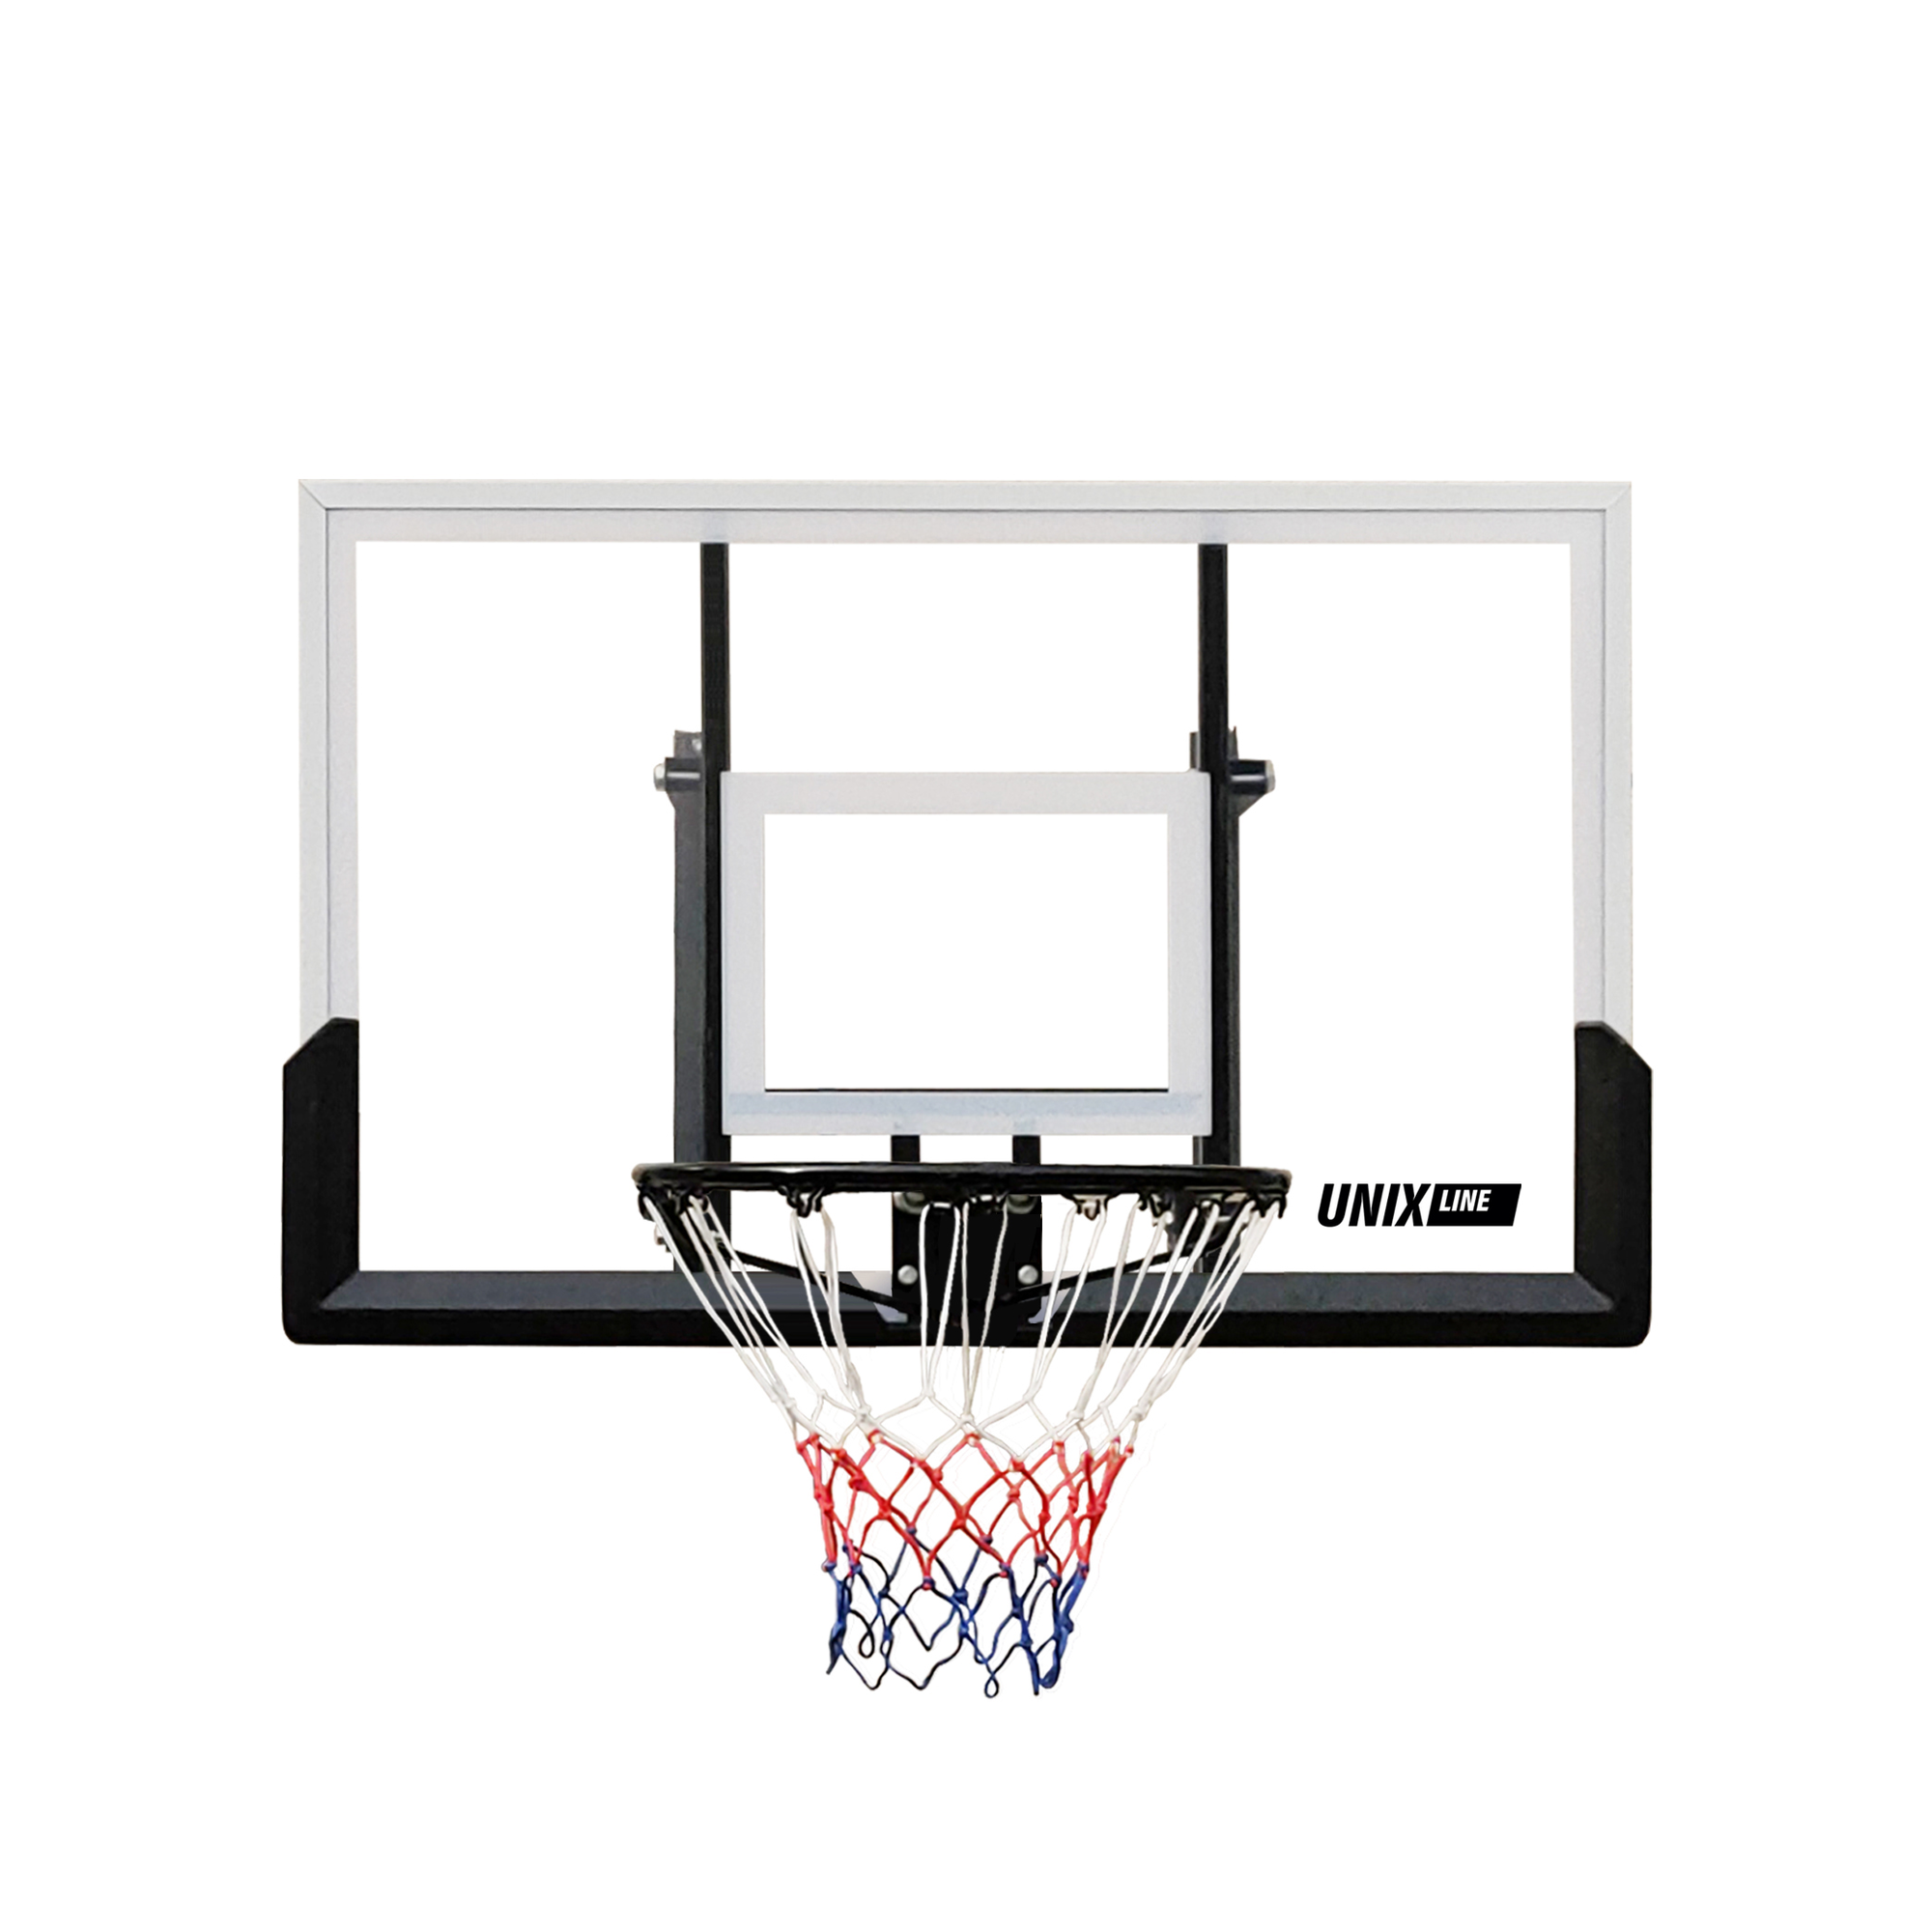 Щит баскетбольный поликарбонат 122x82cm